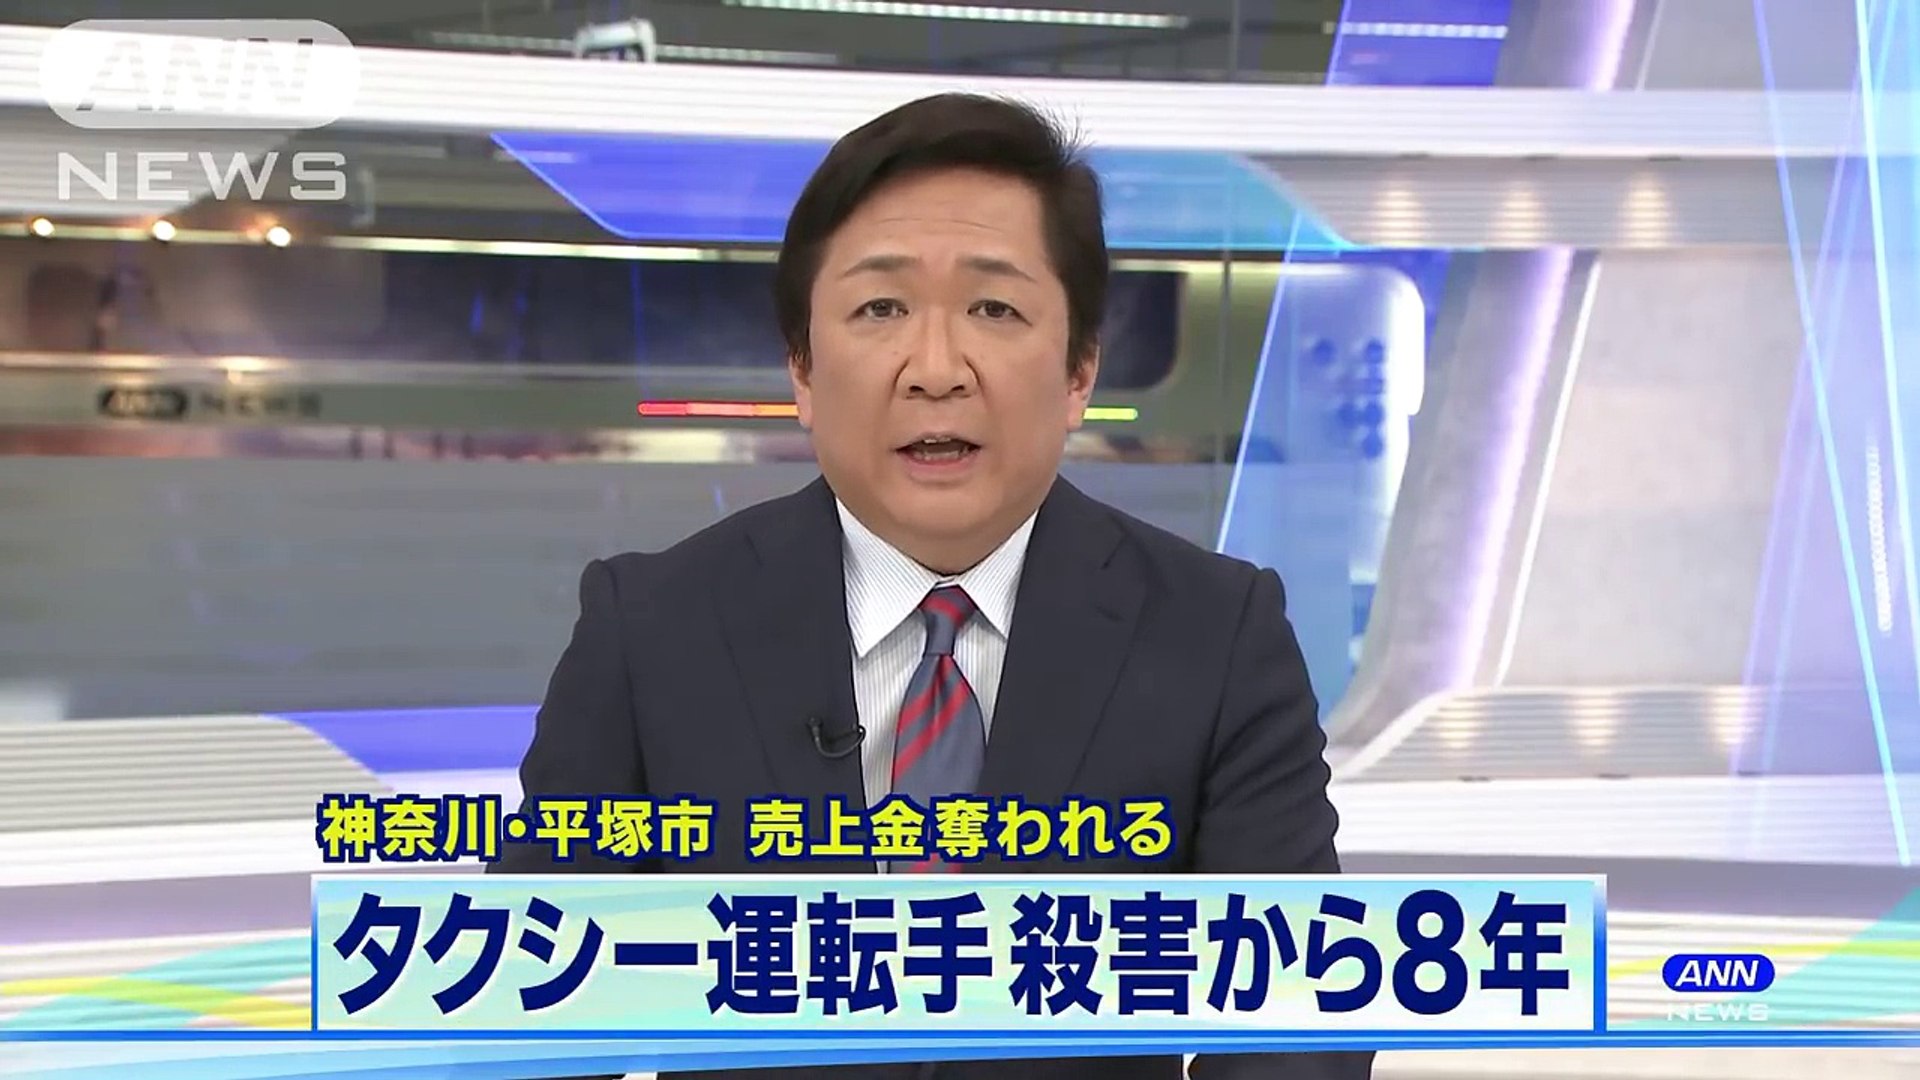 平塚タクシー運転手強盗殺人 有力情報なく8年 18 05 Video Dailymotion